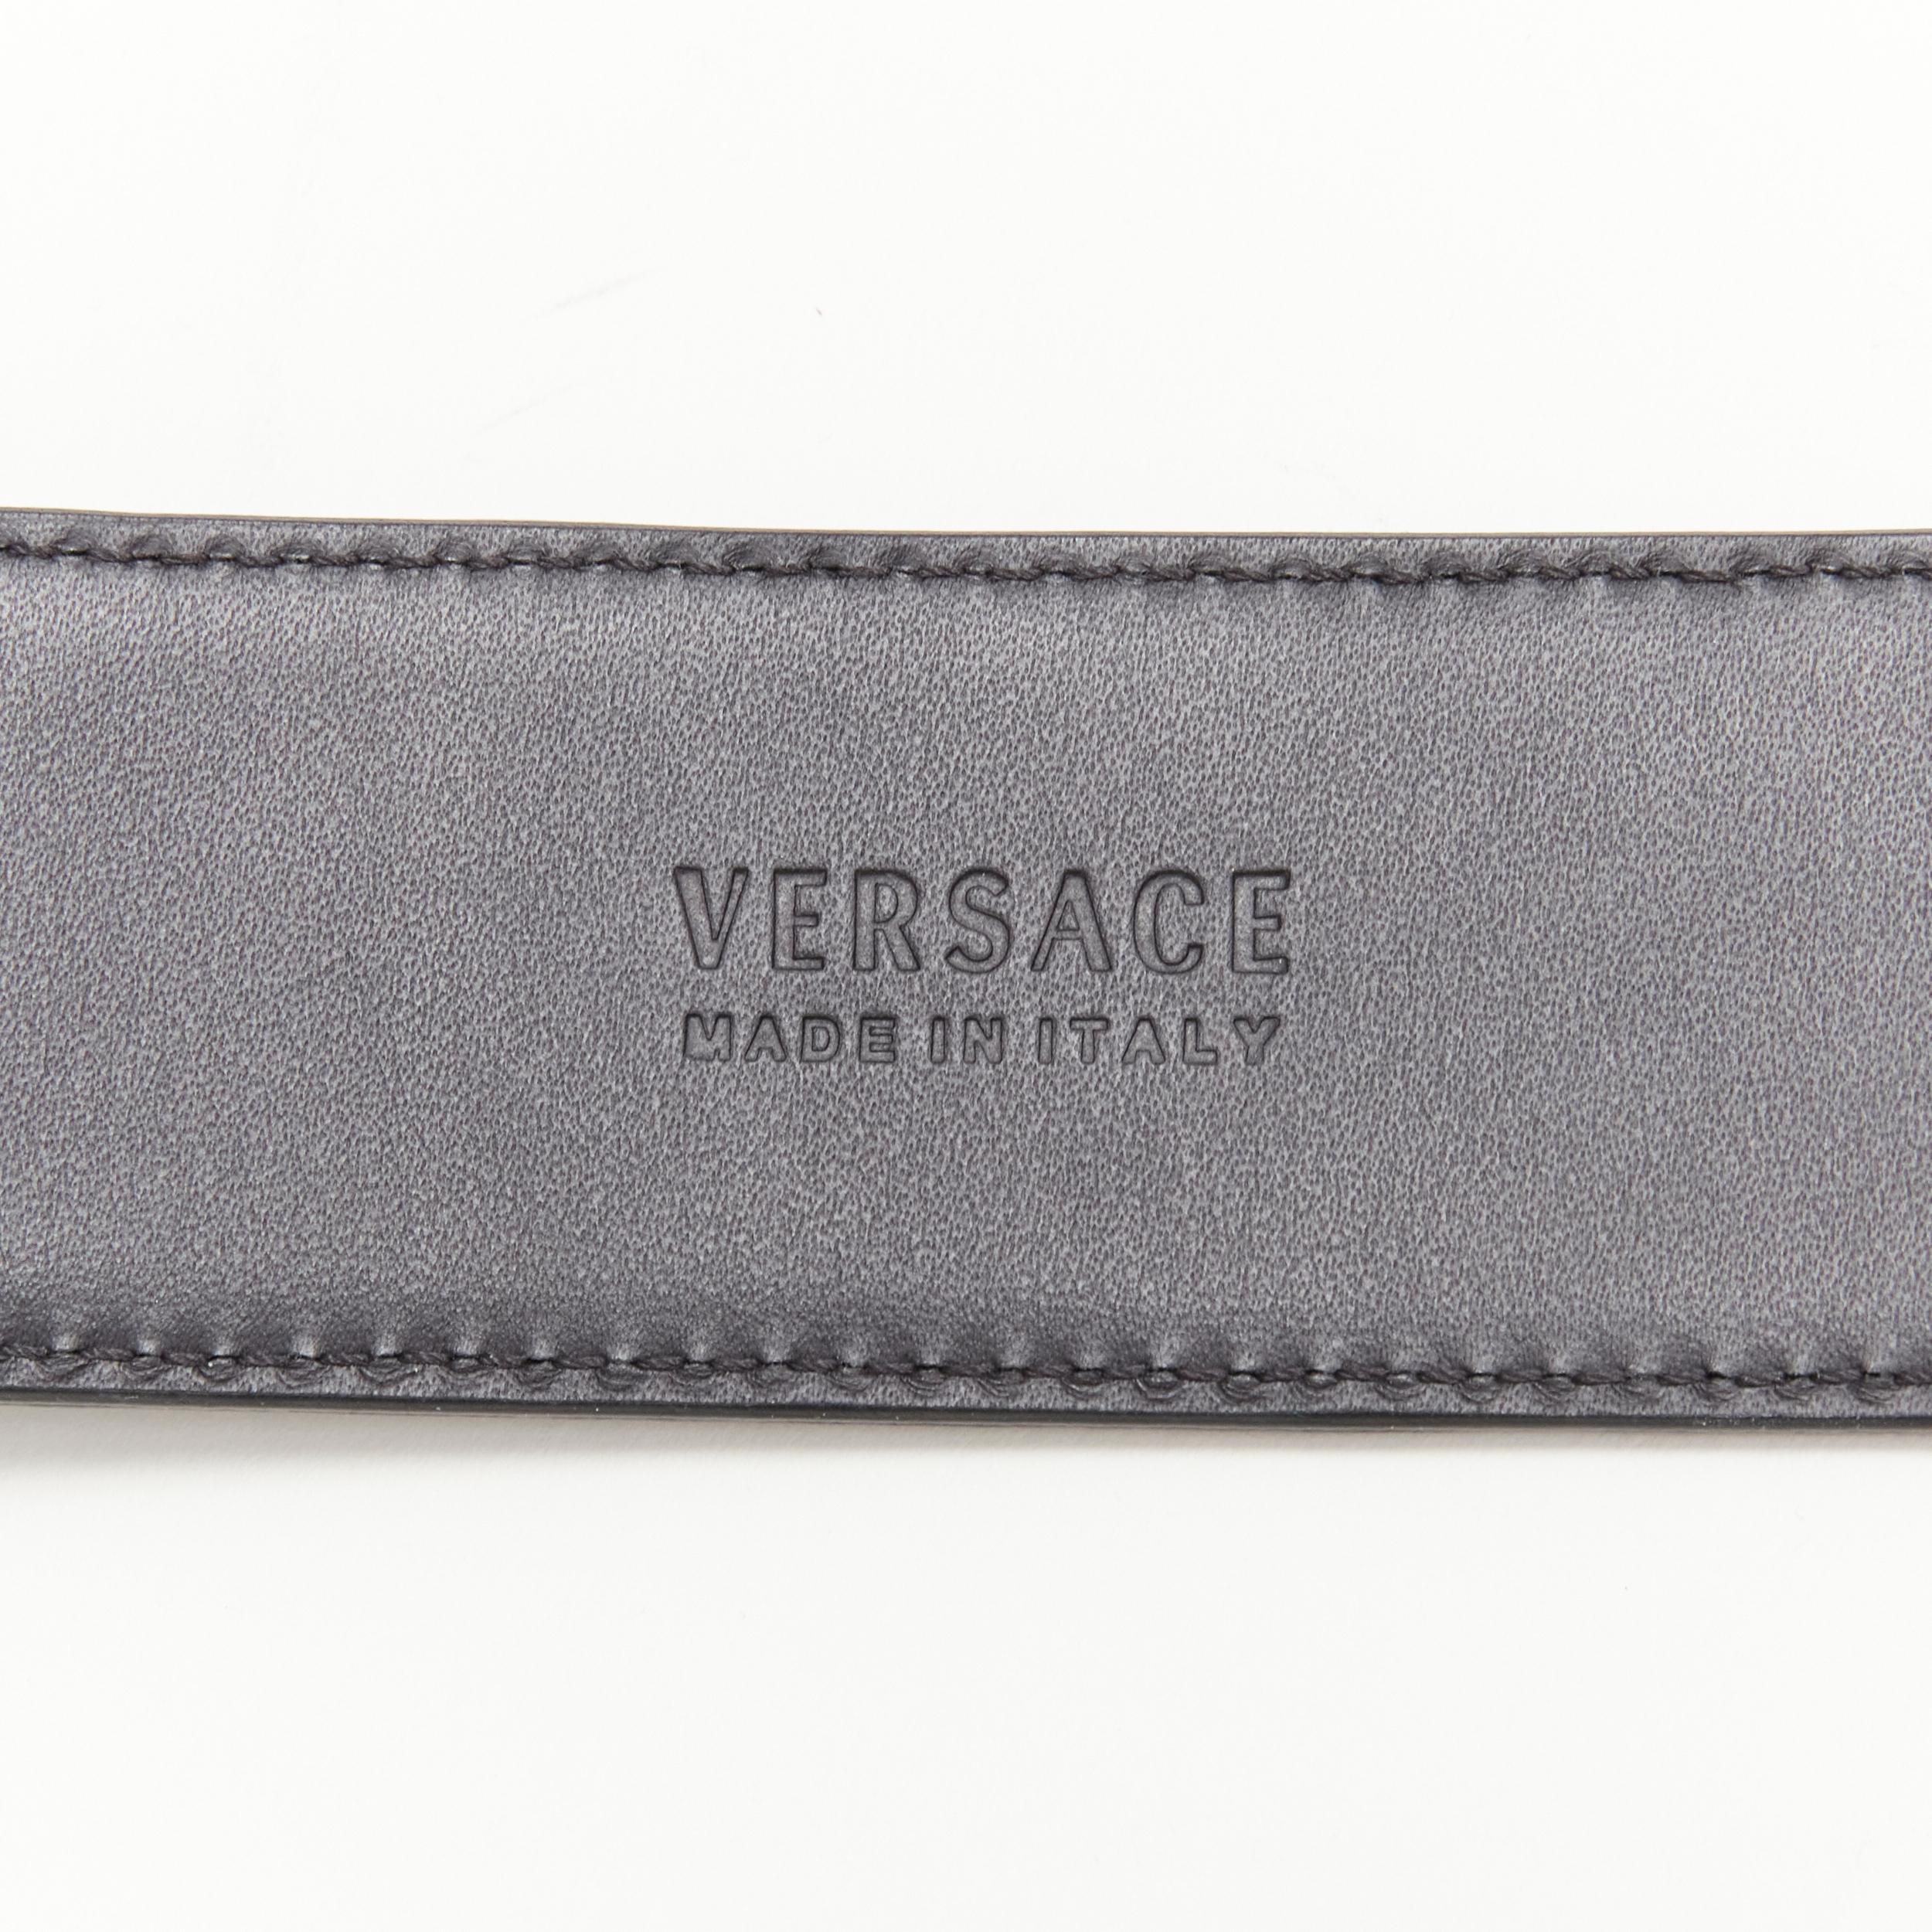 new VERSACE $1200 La Medusa gold buckle black croc leather belt 115cm 44-48